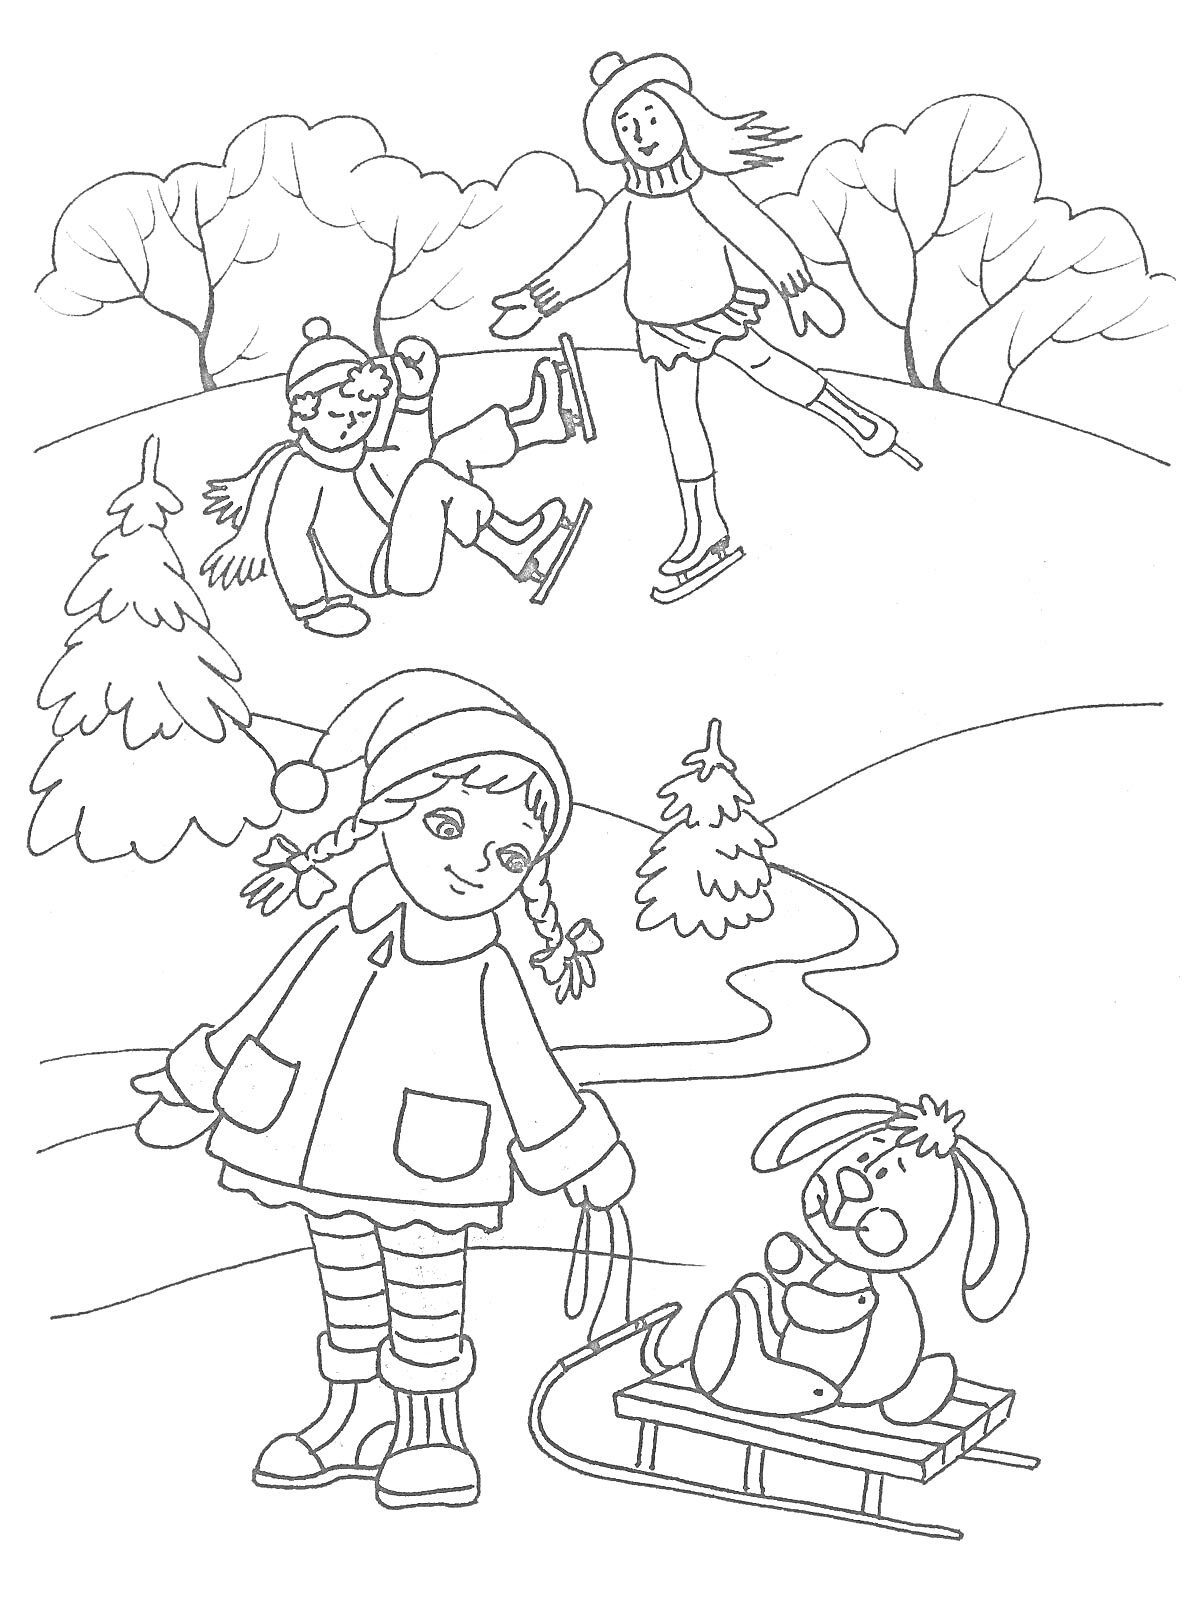 Раскраска Дети катаются на коньках и санках зимой в лесу. На переднем плане девочка тащит санки с игрушечным зайцем, на заднем плане двое детей катаются на коньках. Вокруг заснеженные деревья и кусты, снежный пейзаж.